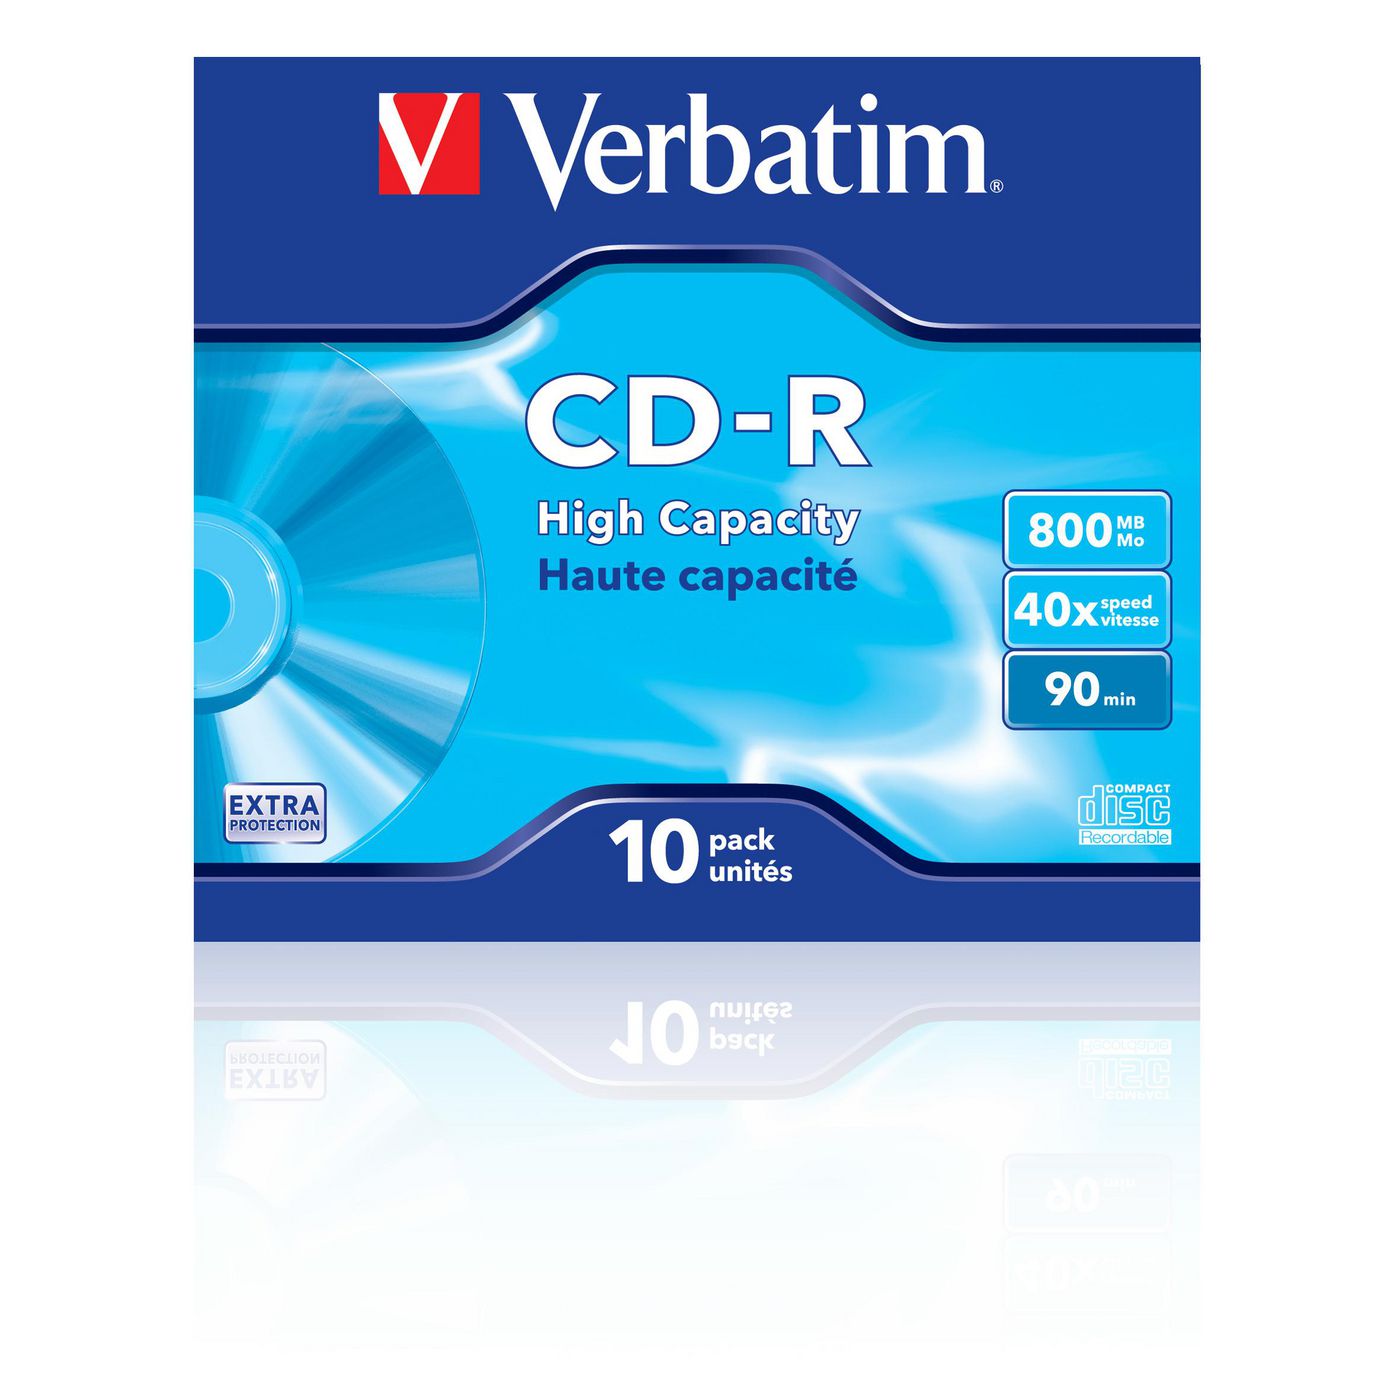 Verbatim 43428 CD-R, 40X, High Capacity 800MB 